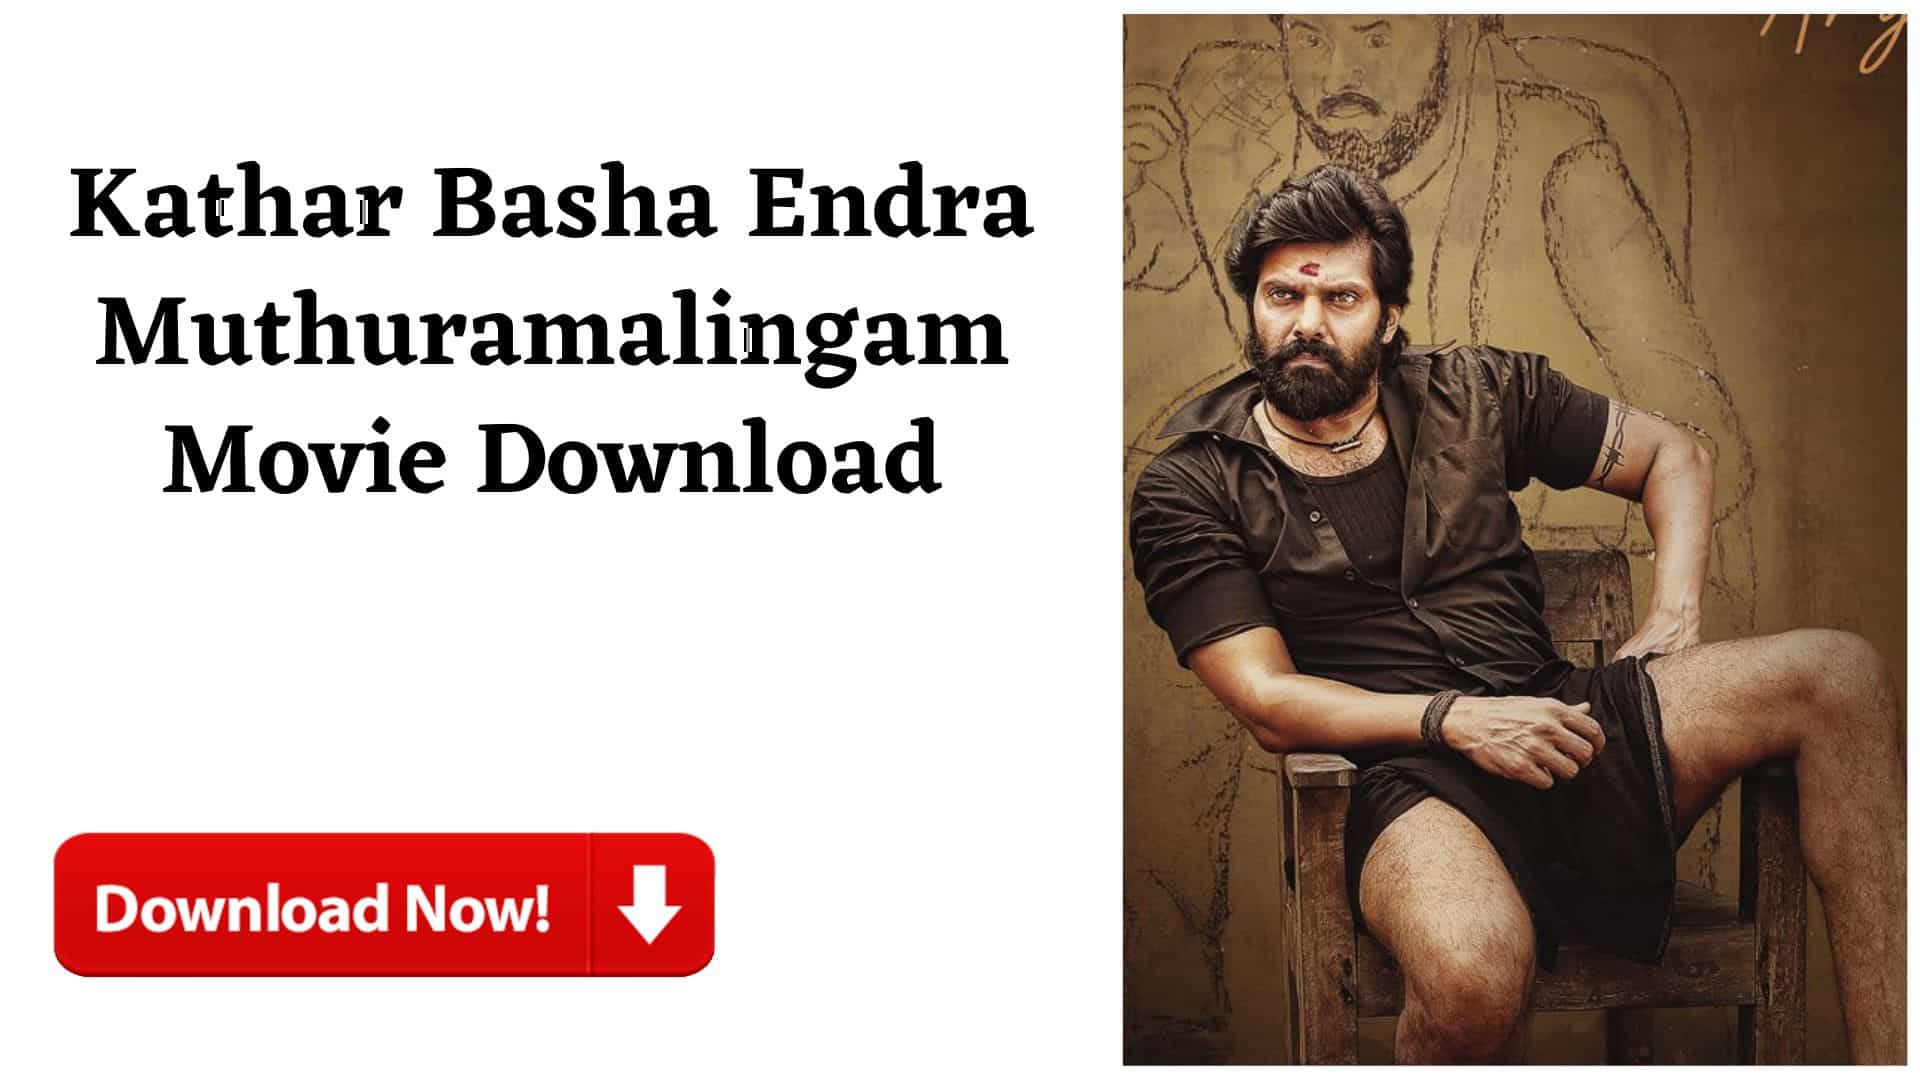 Kather Basha Endra Muthuramalingam Movie Download 